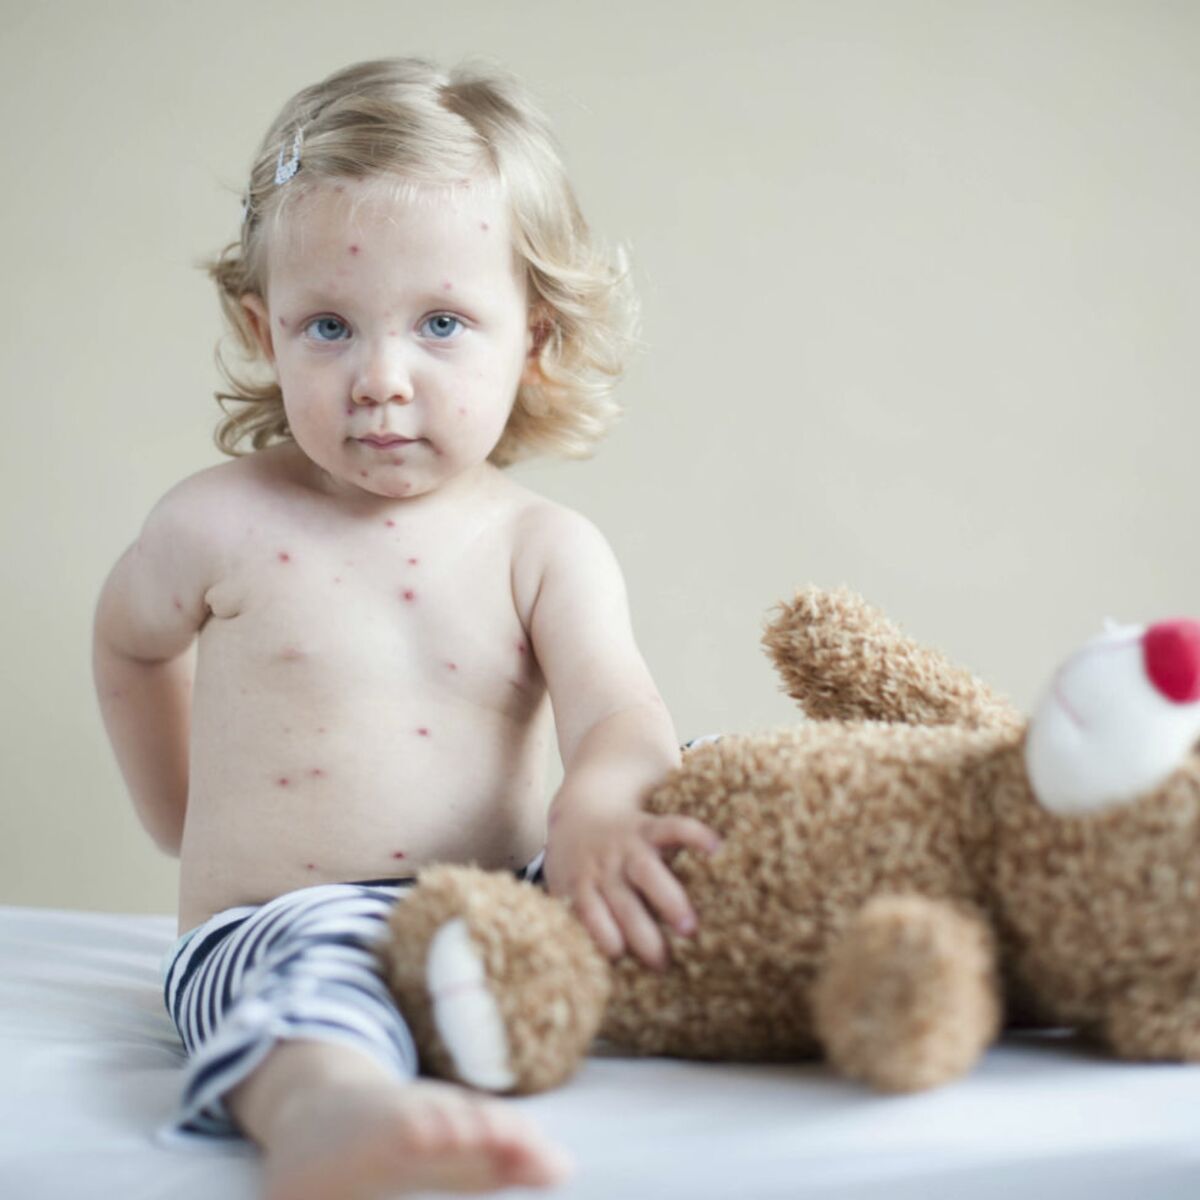 Boutons chez l'enfant : reconnaître la varicelle et la rubéole ...